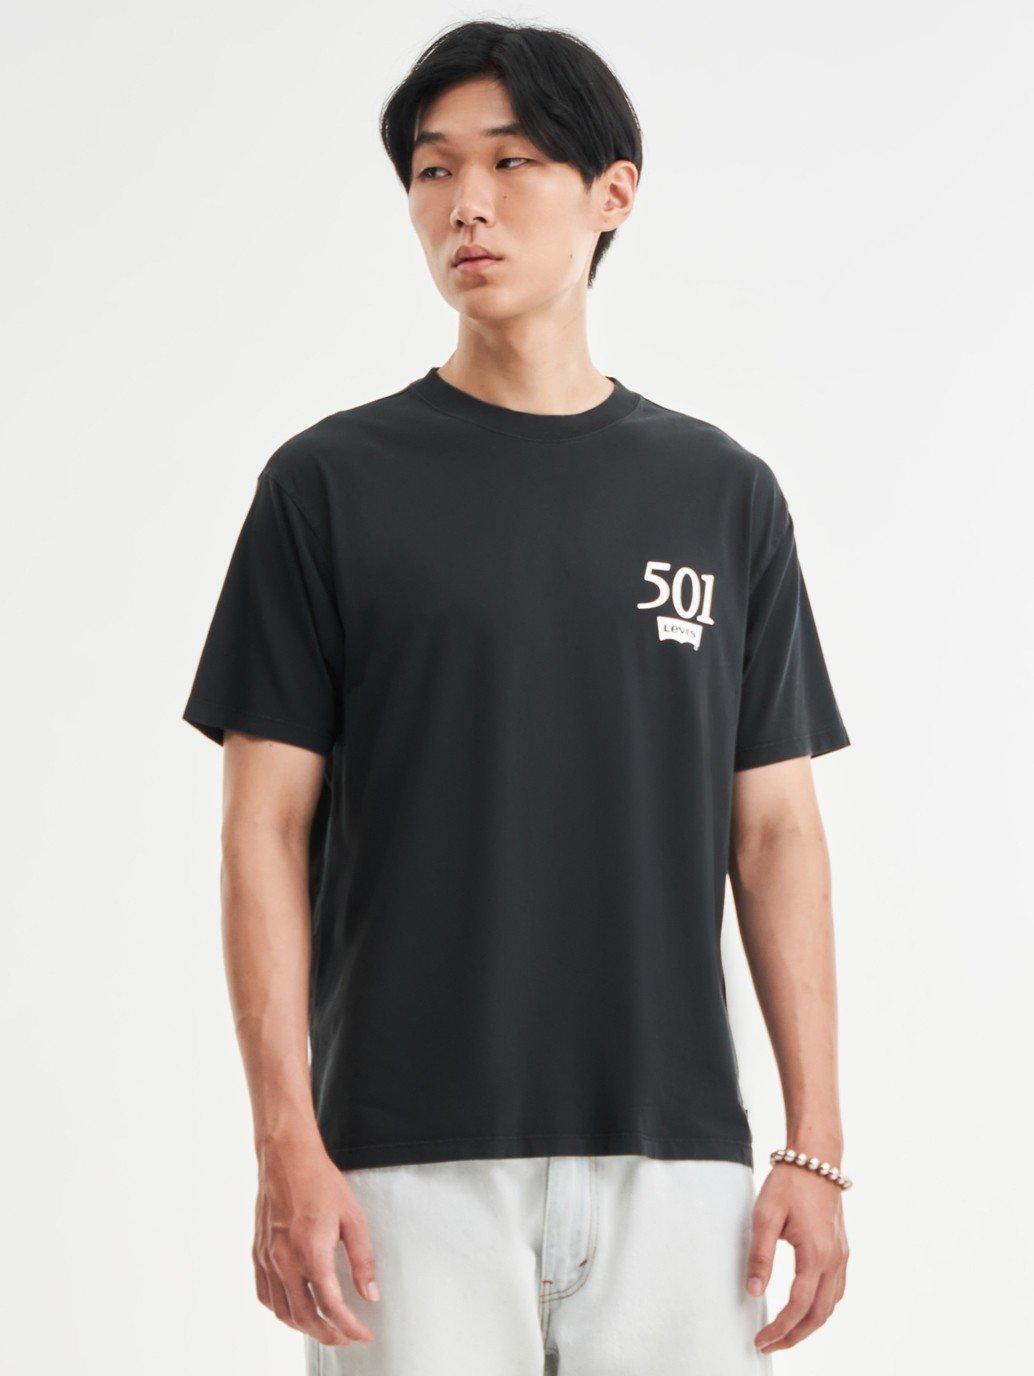 Buy Levi's® Men's Vintage Fit Graphic T-Shirt| Levi's Official Online ...